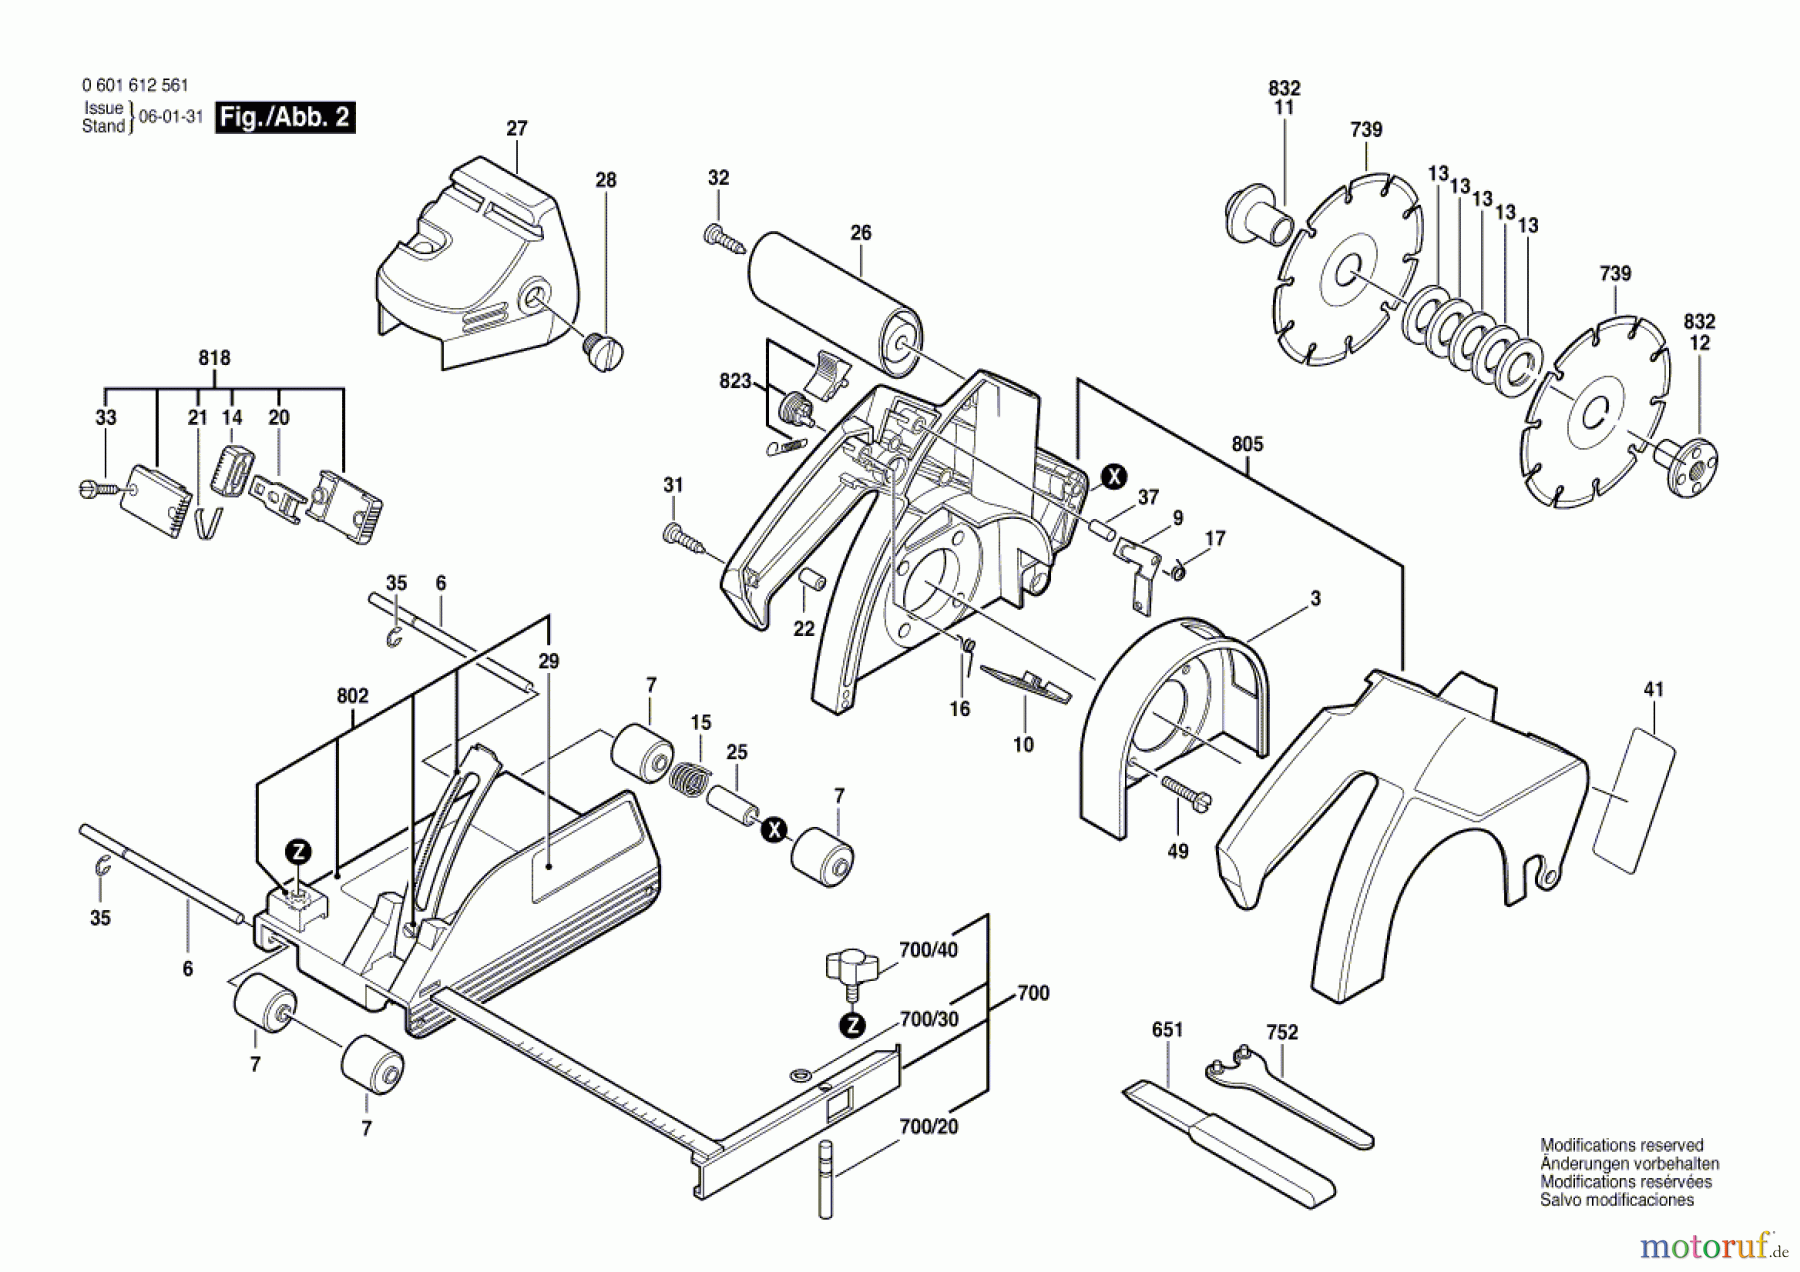  Bosch Werkzeug Mauernutfräse R-115 Seite 2